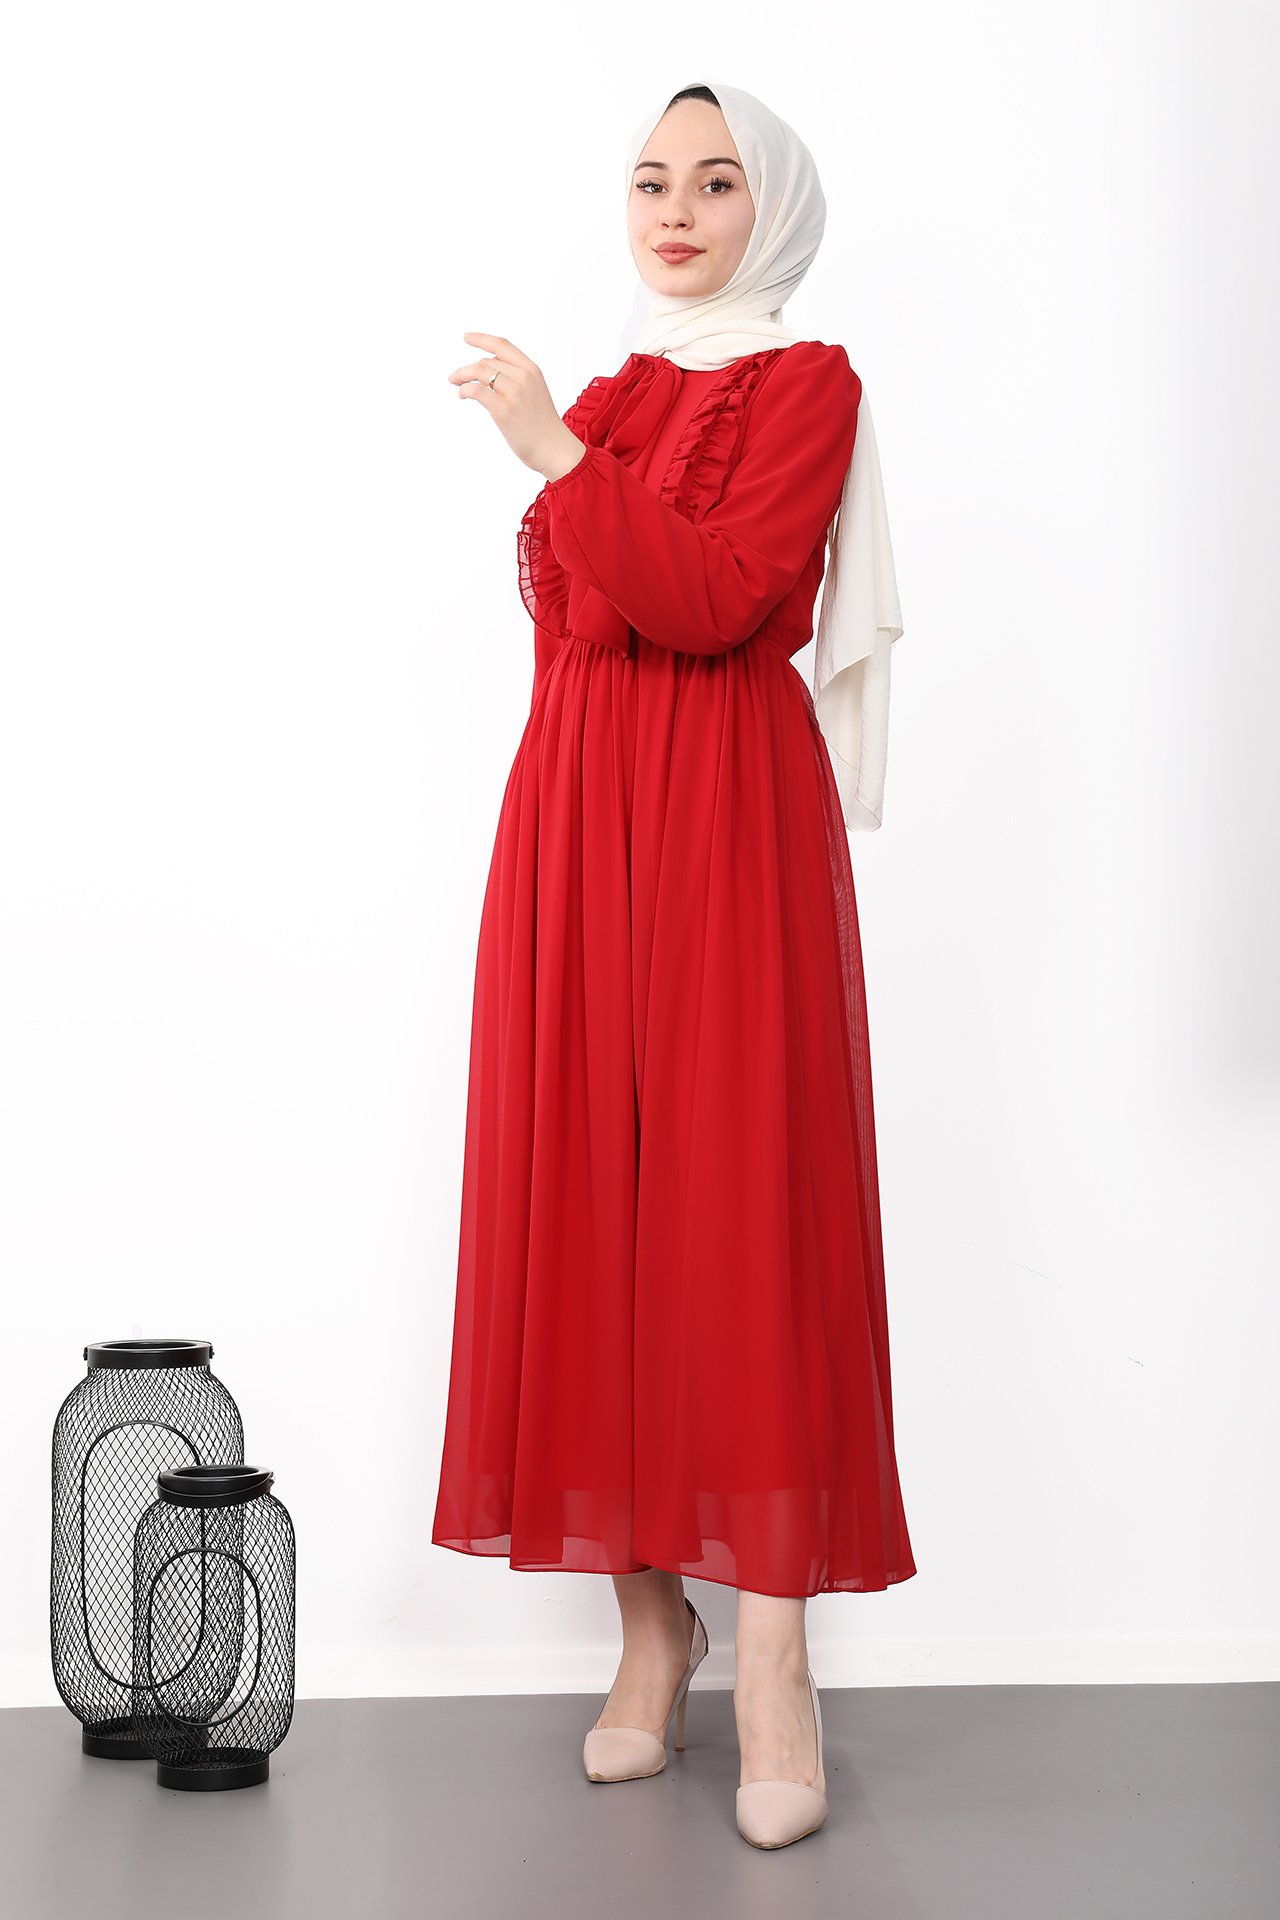 GİZAGİYİM - Fırfırlı Şifon Tesettür Elbise Kırmızı